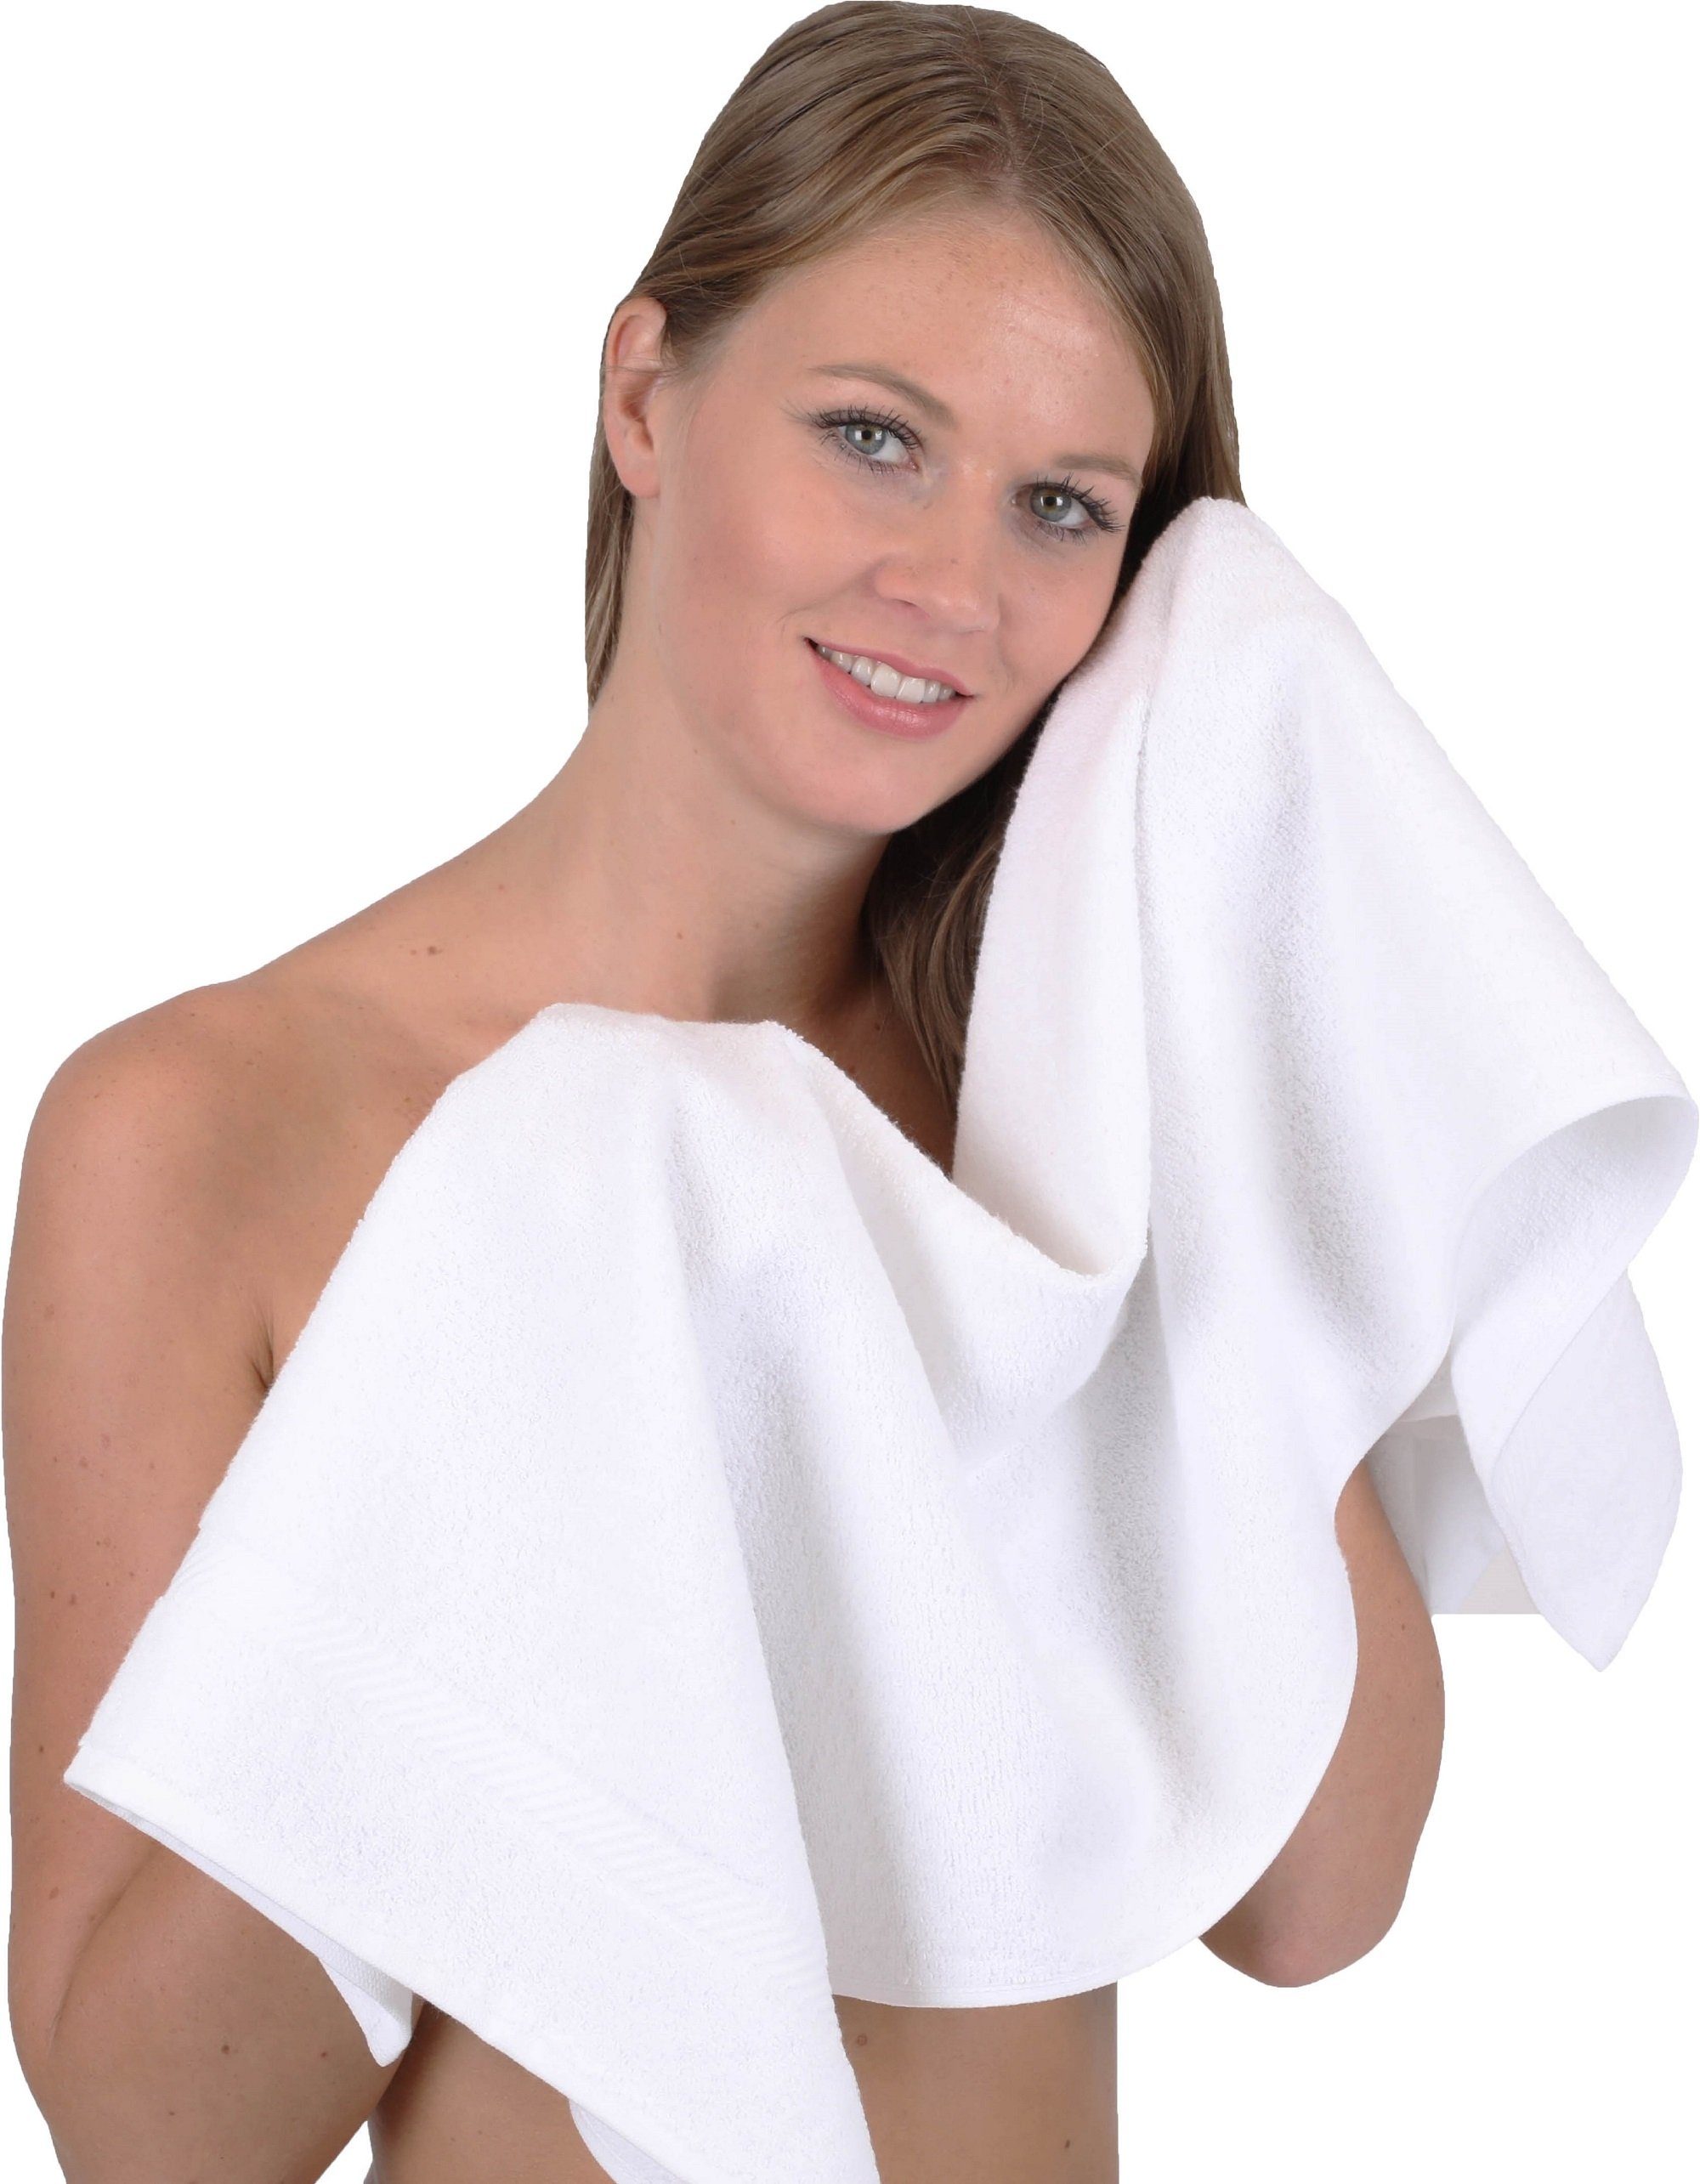 Betz Handtuch Set 10-TLG. 100% weiß, Handtuch-Set Palermo Farbe Baumwolle